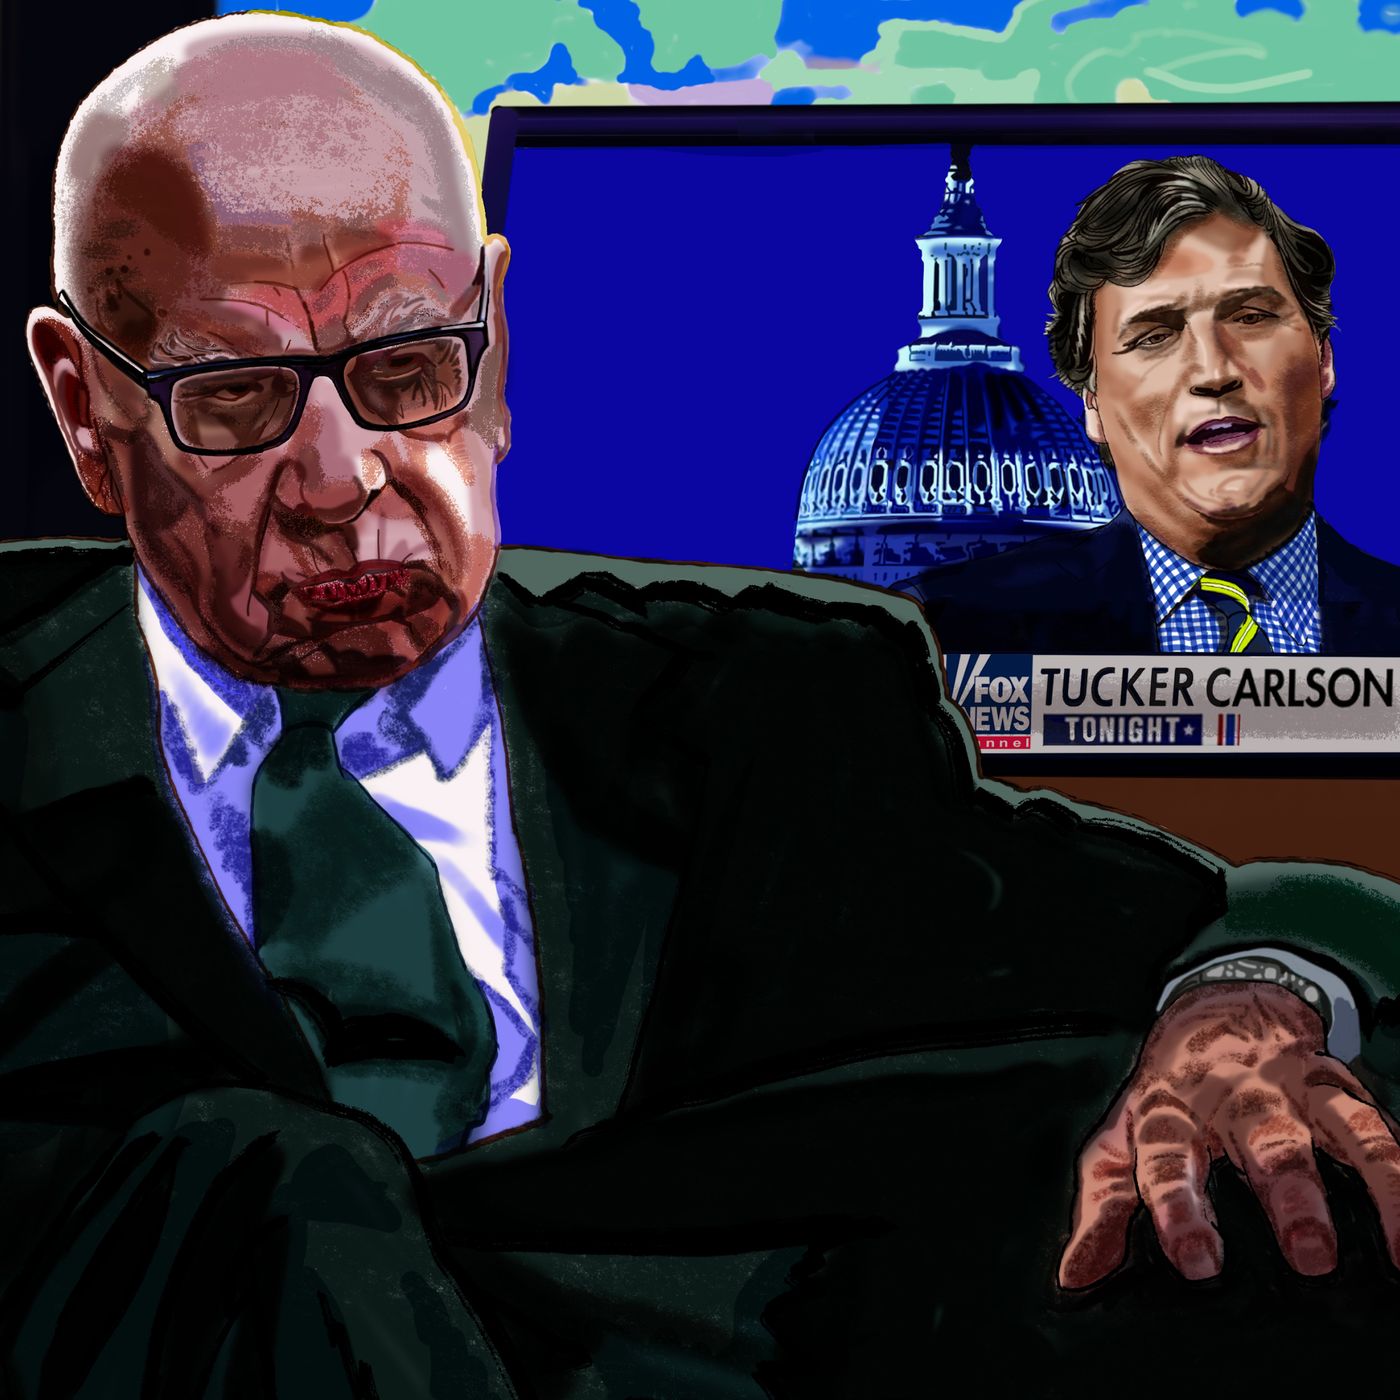 Why Rupert Murdoch Fired Tucker Carlson From Fox News